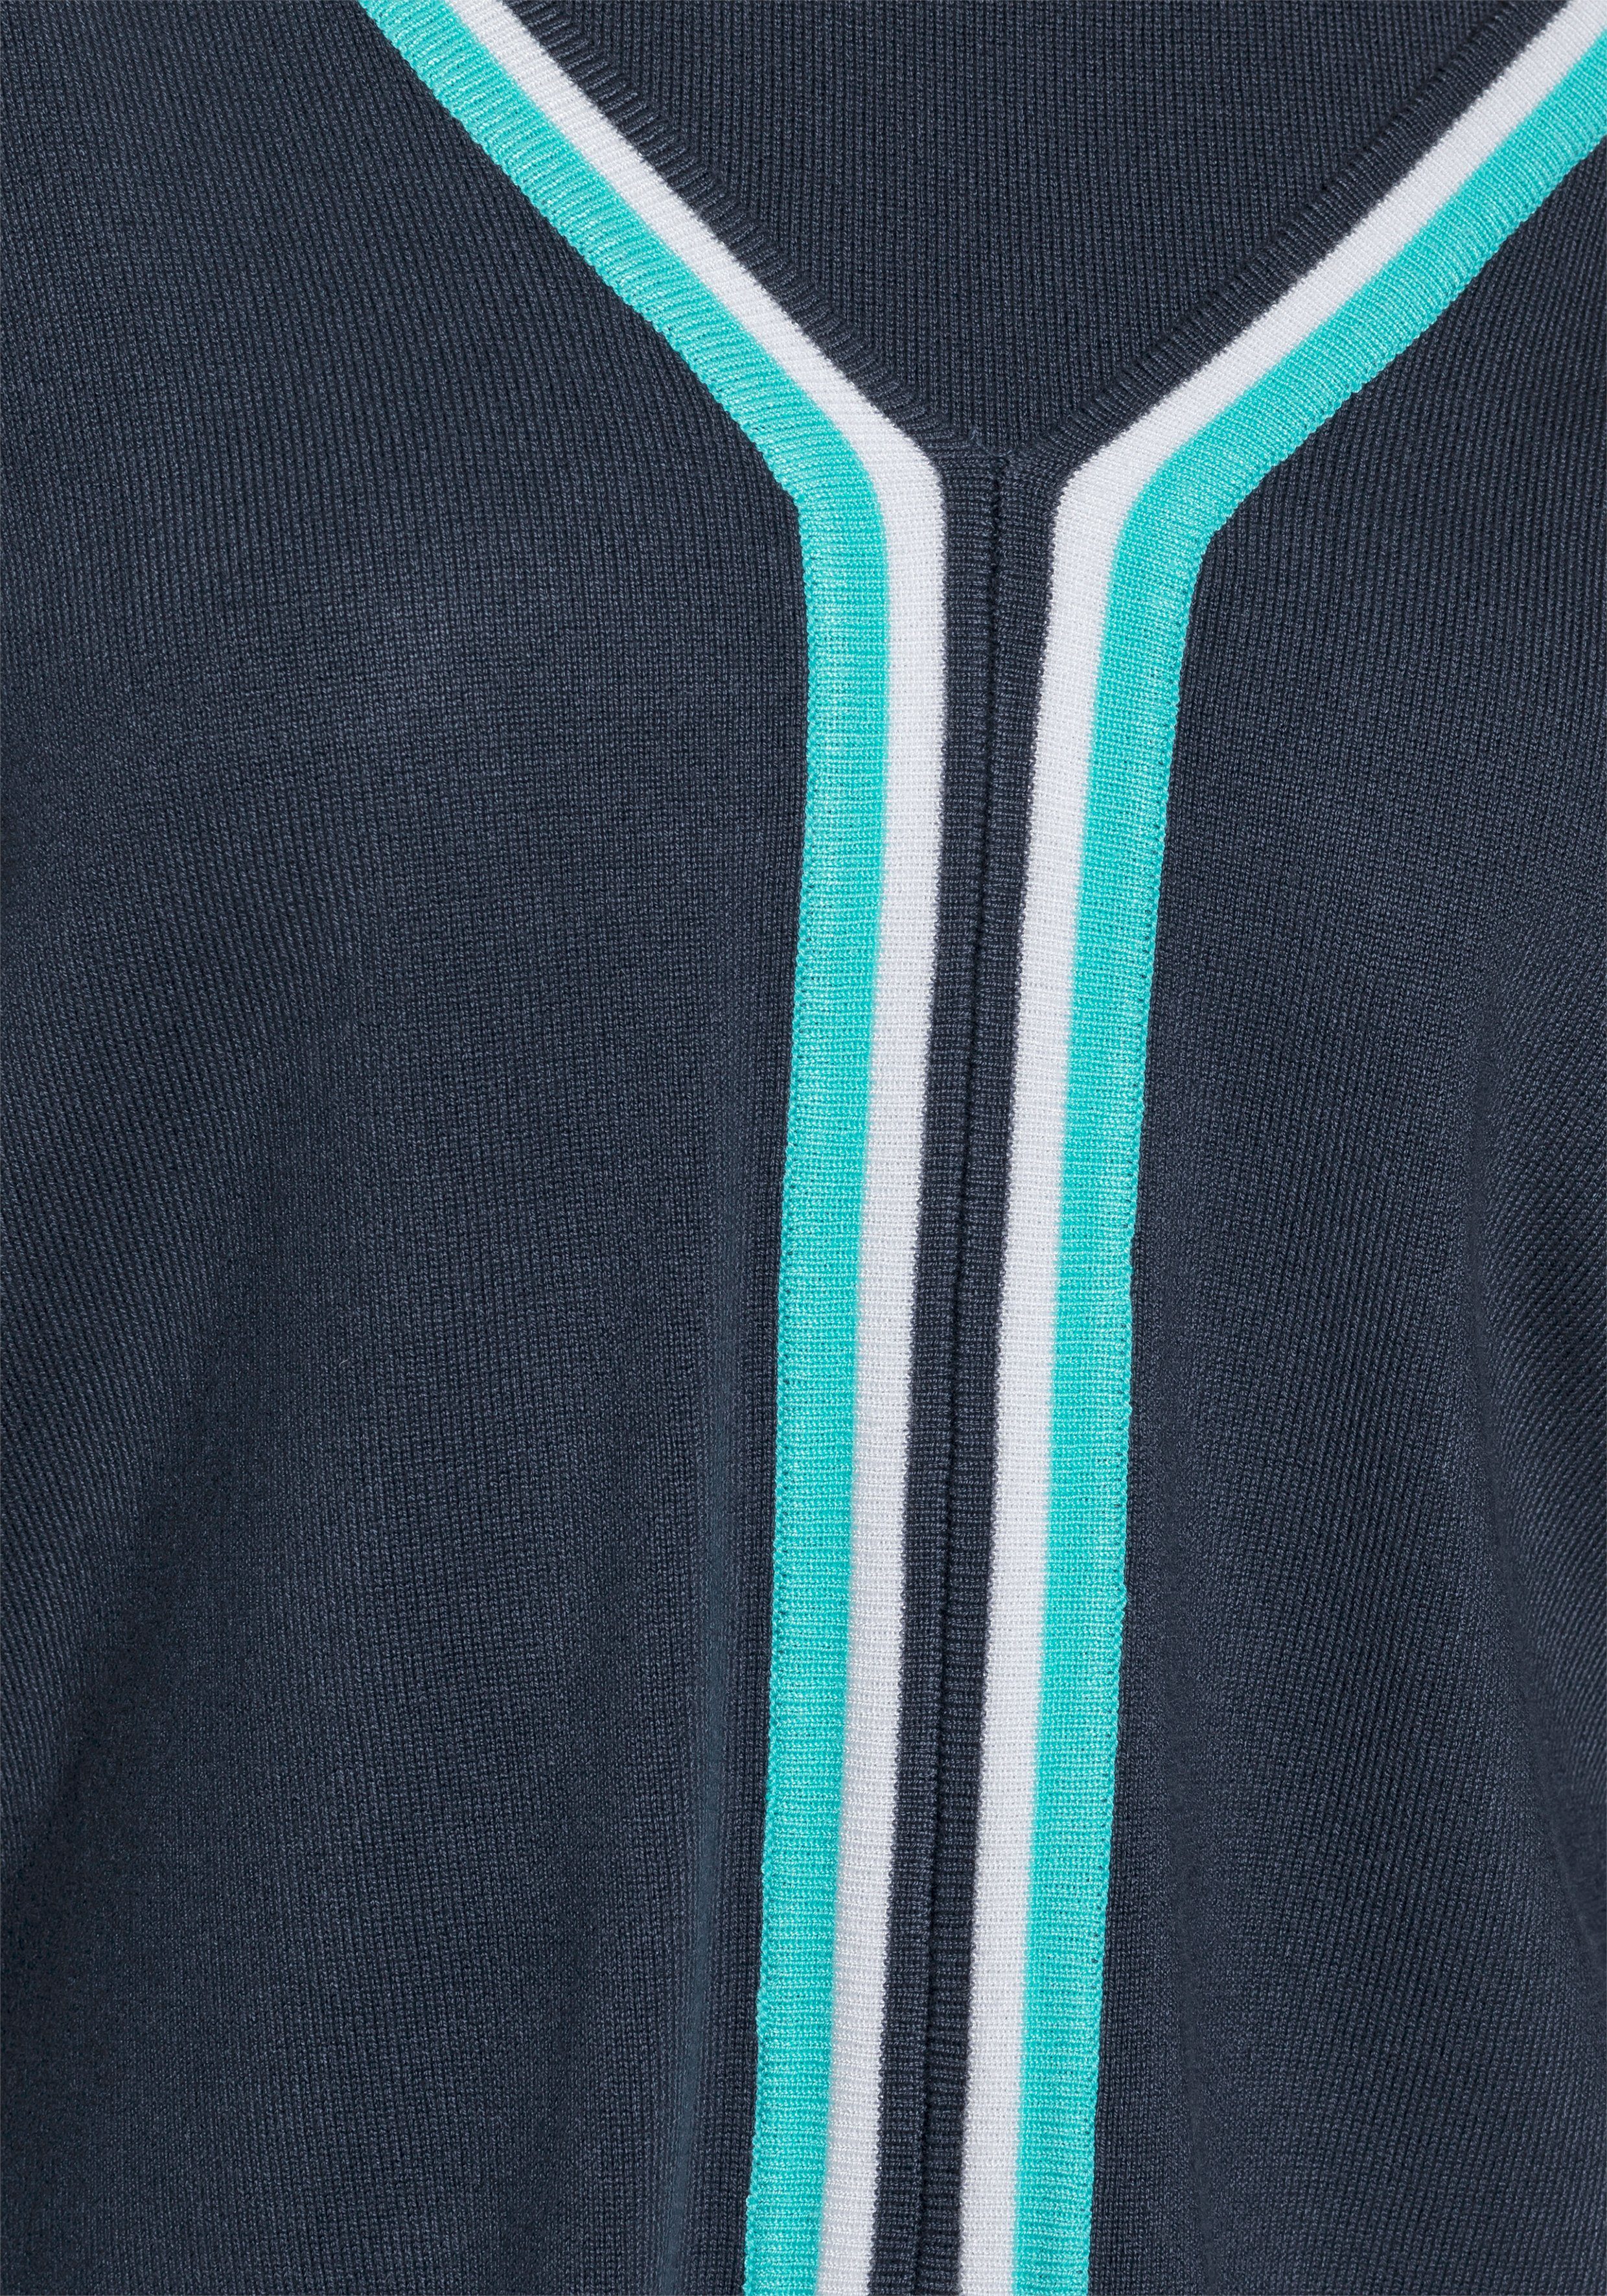 Strickkleid Kleid und AJC (Set) Pullover marine-türkis